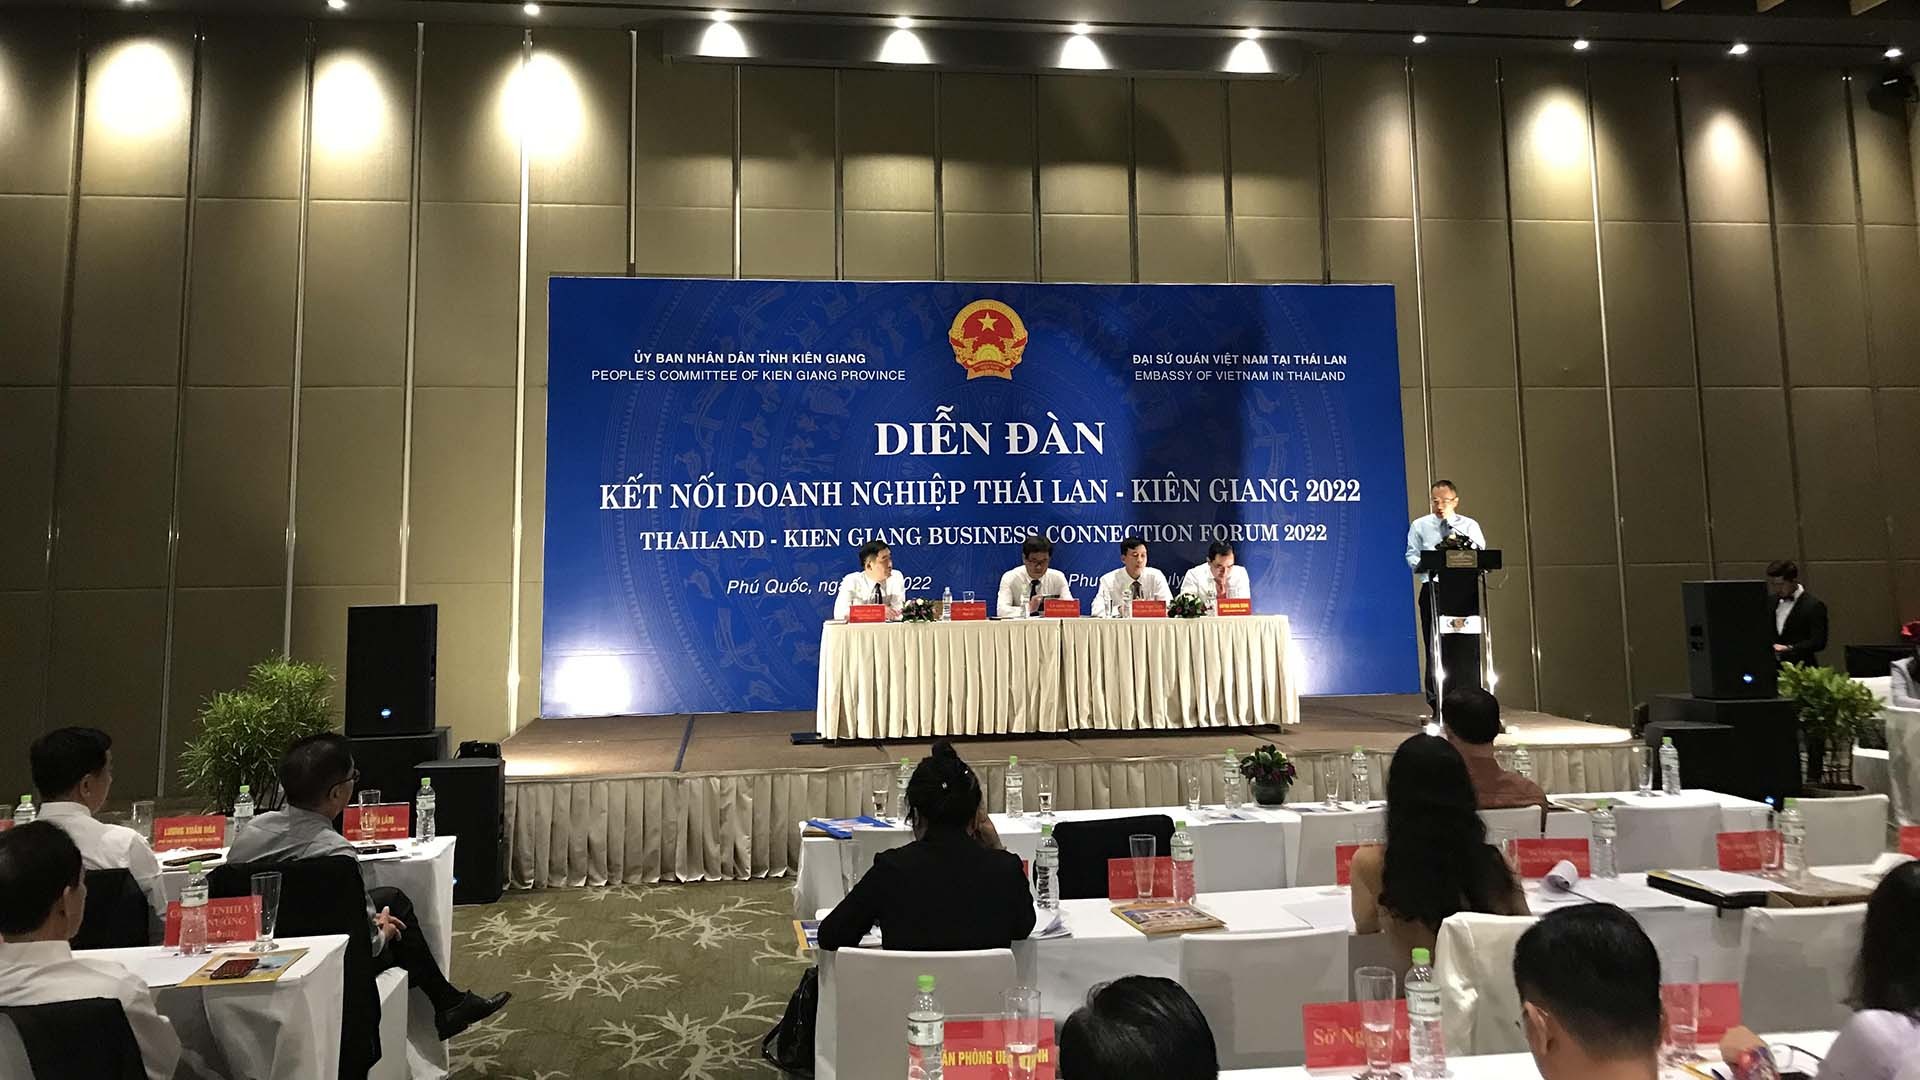 Đại sứ Việt Nam tại Thái Lan Phan Chí Thành phát biểu tại Phiên khai mạc Diễn đàn Kết nối doanh nghiệp Thái Lan-Kiên Giang.